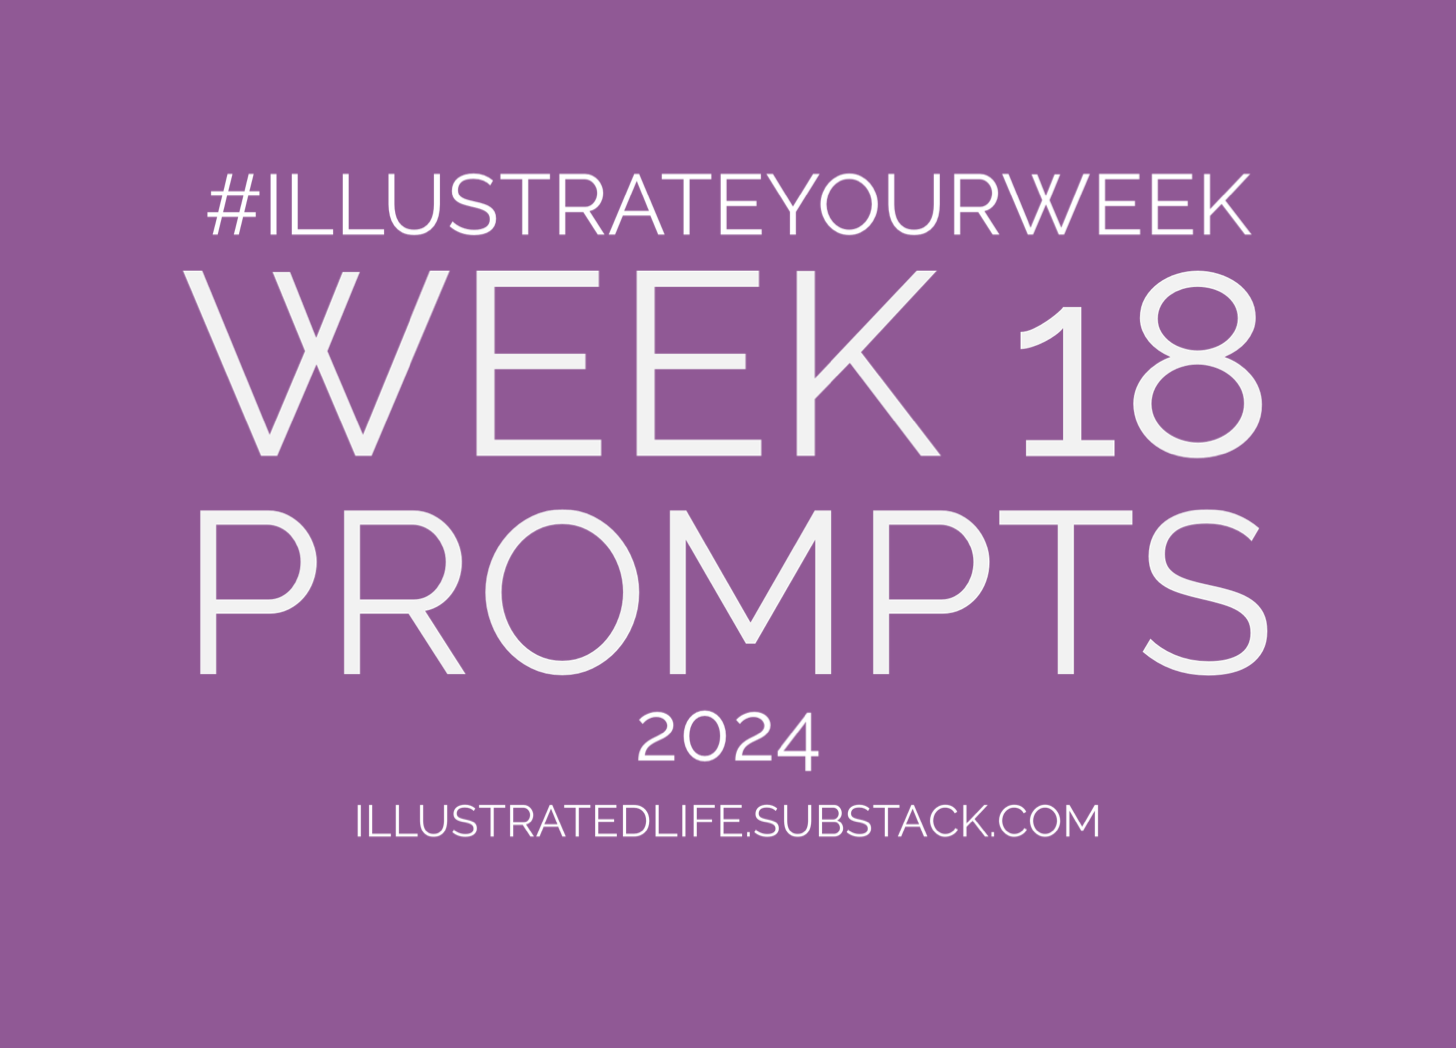 Illustrate Your Week Week 18 Prompts 